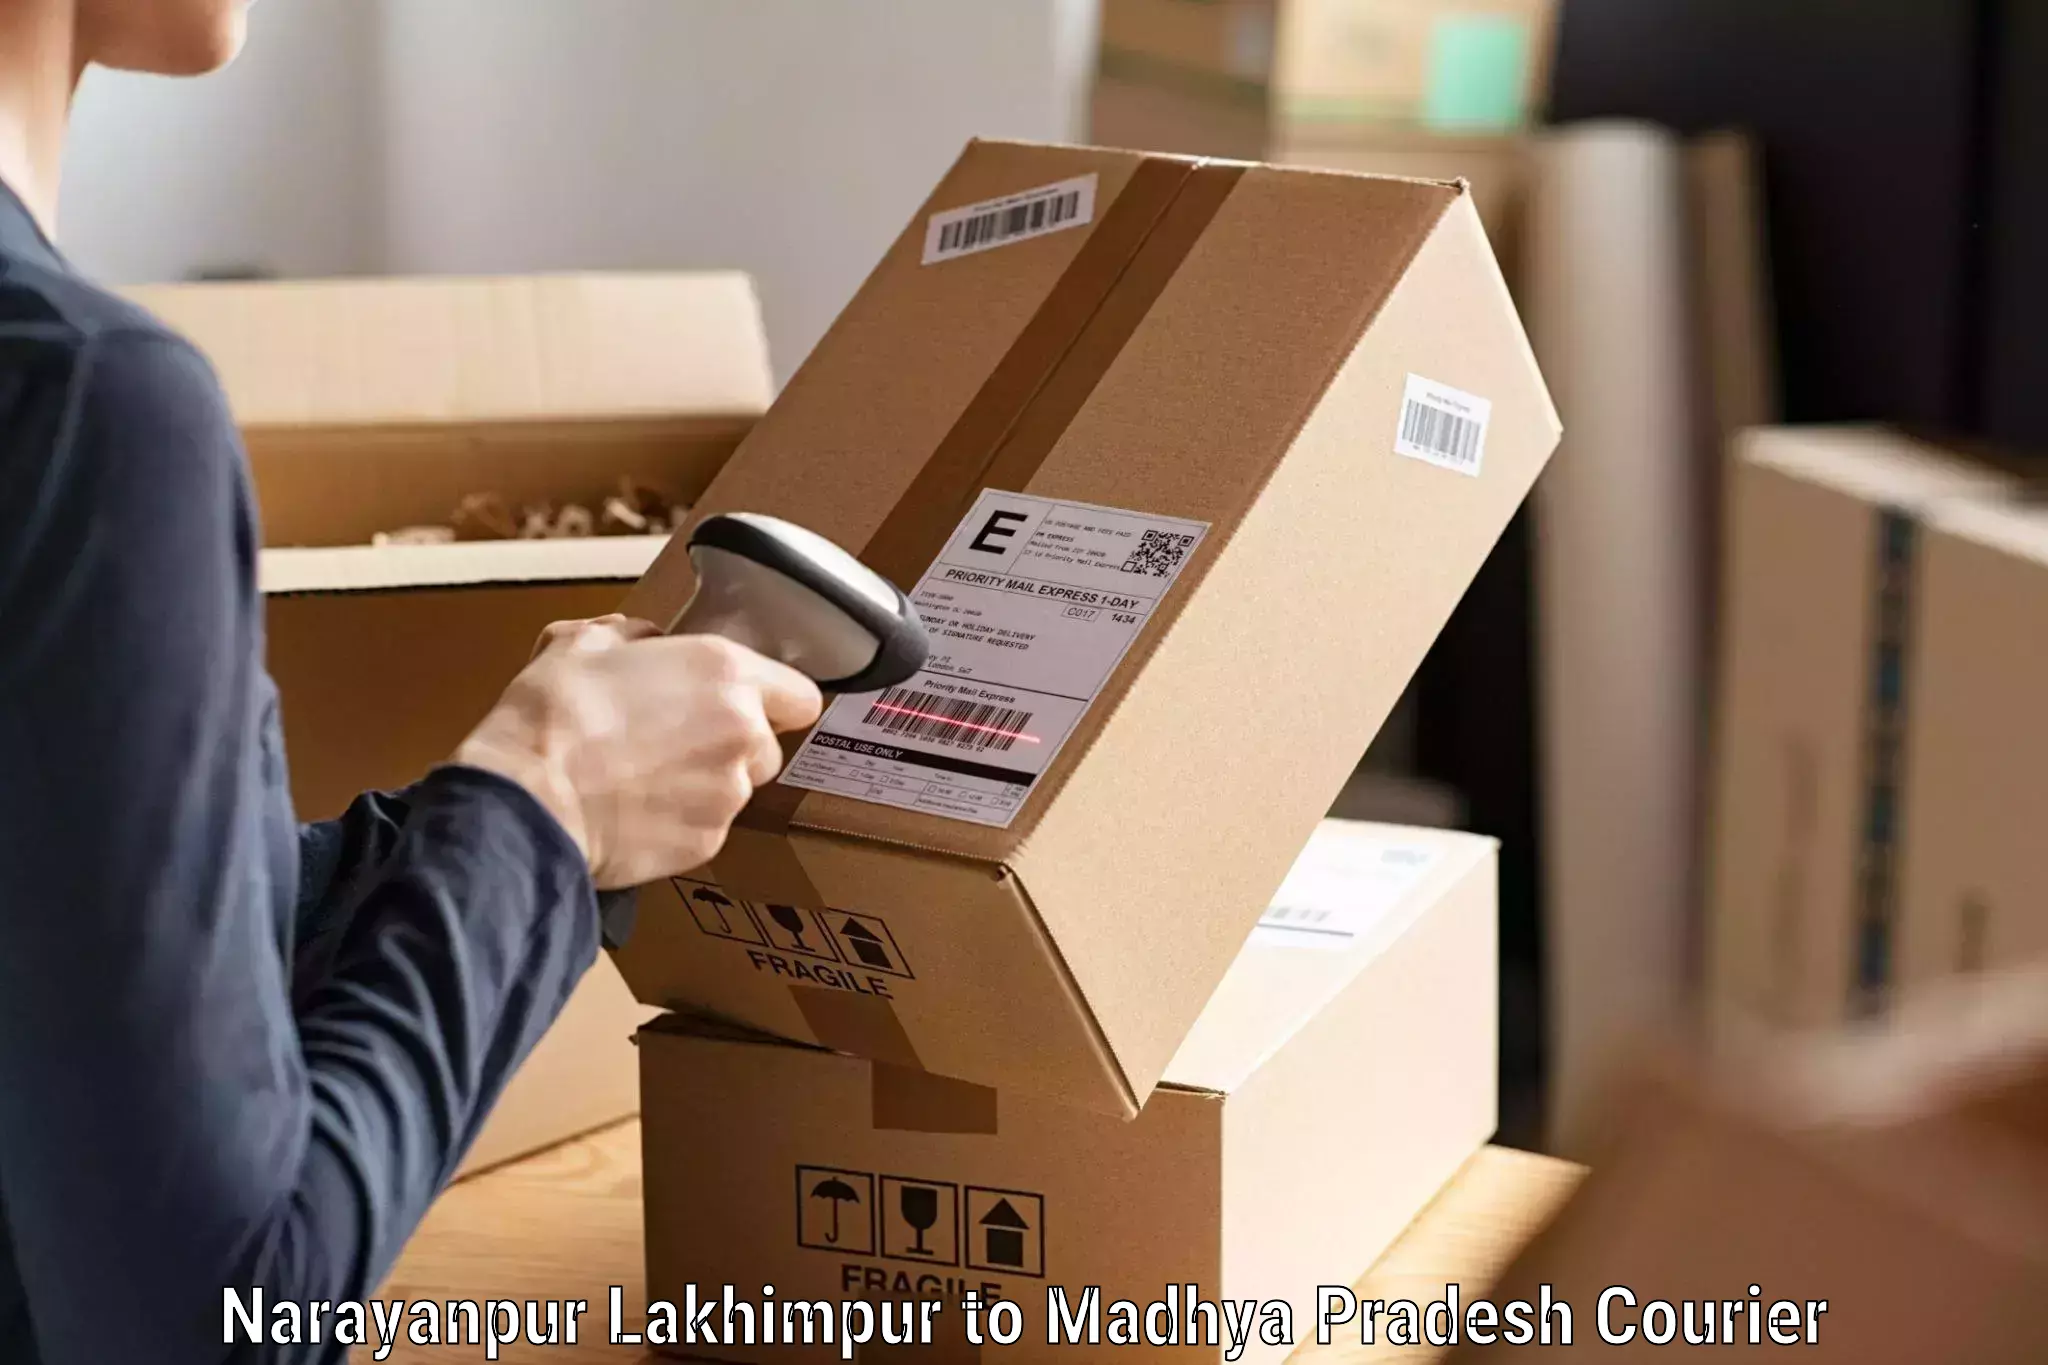 E-commerce fulfillment Narayanpur Lakhimpur to Khandwa